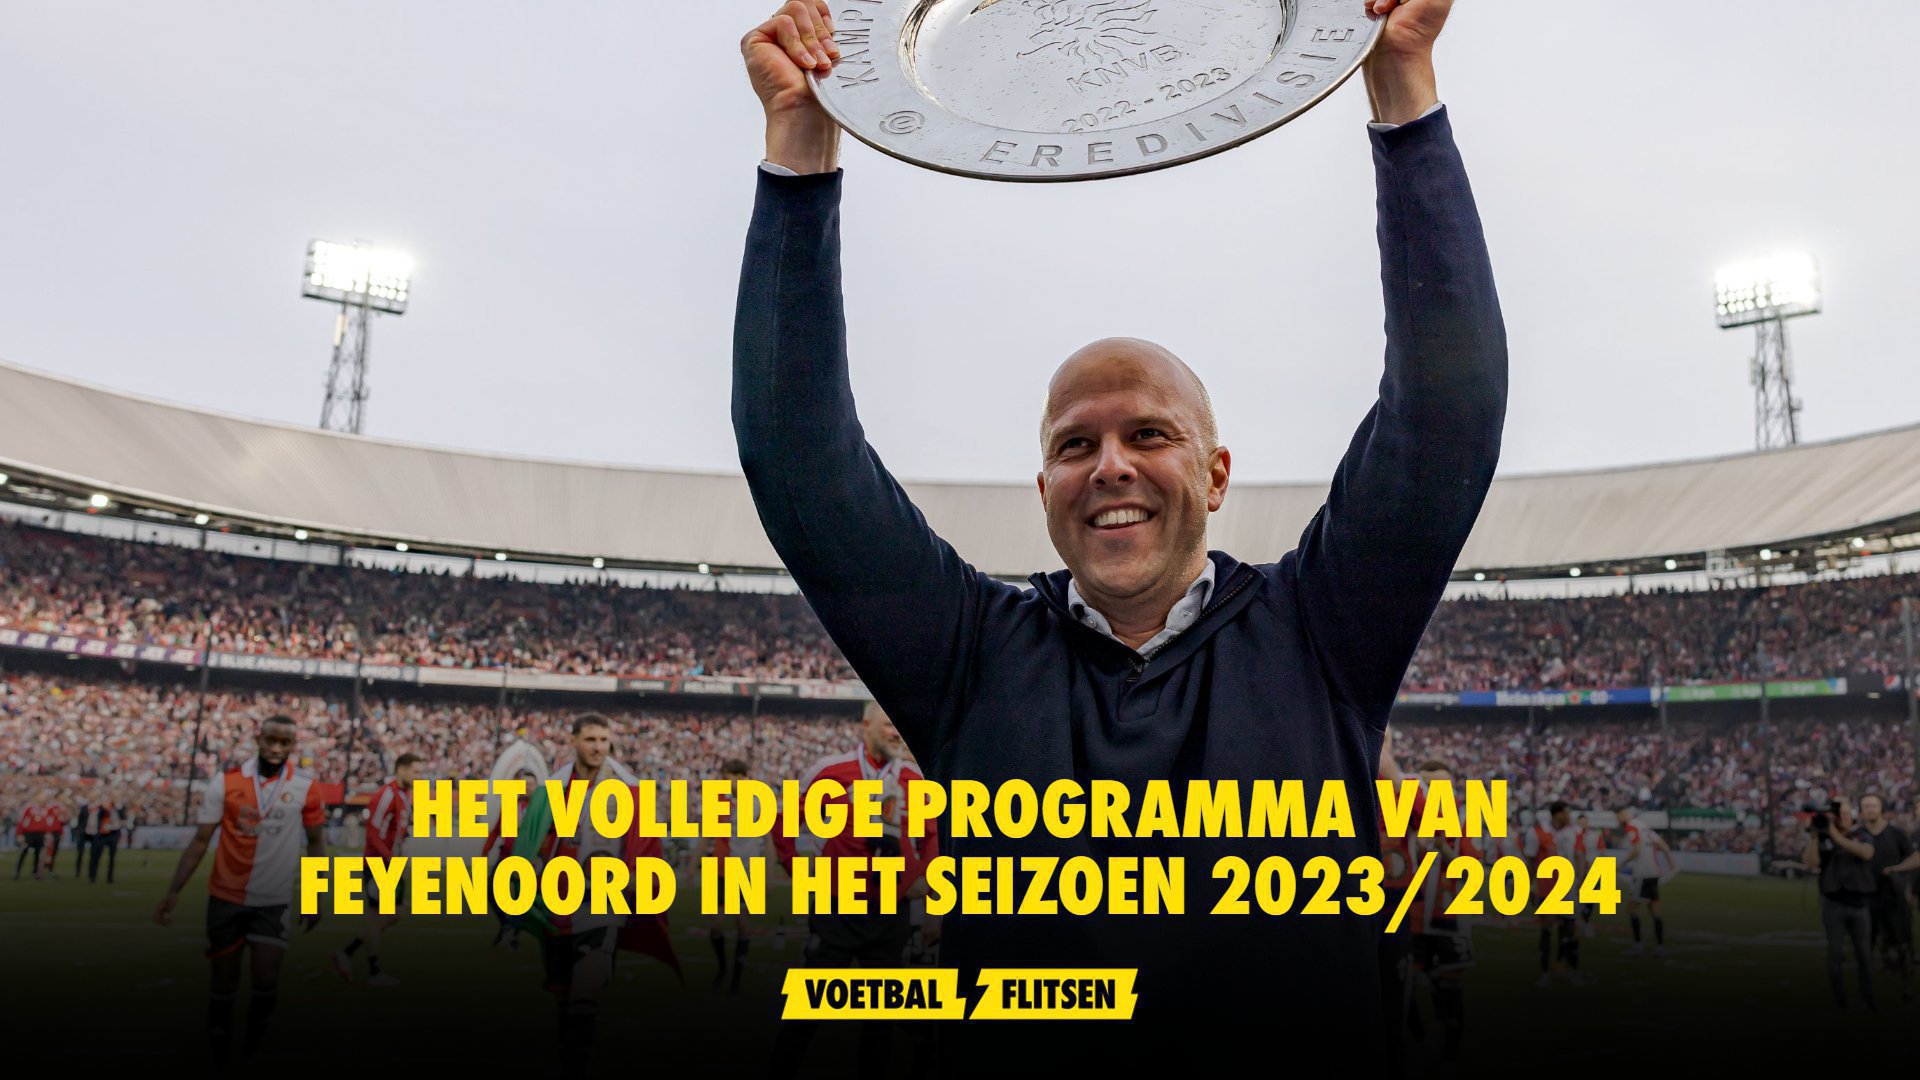 Het volledige programma van Feyenoord in het seizoen 2023/2024